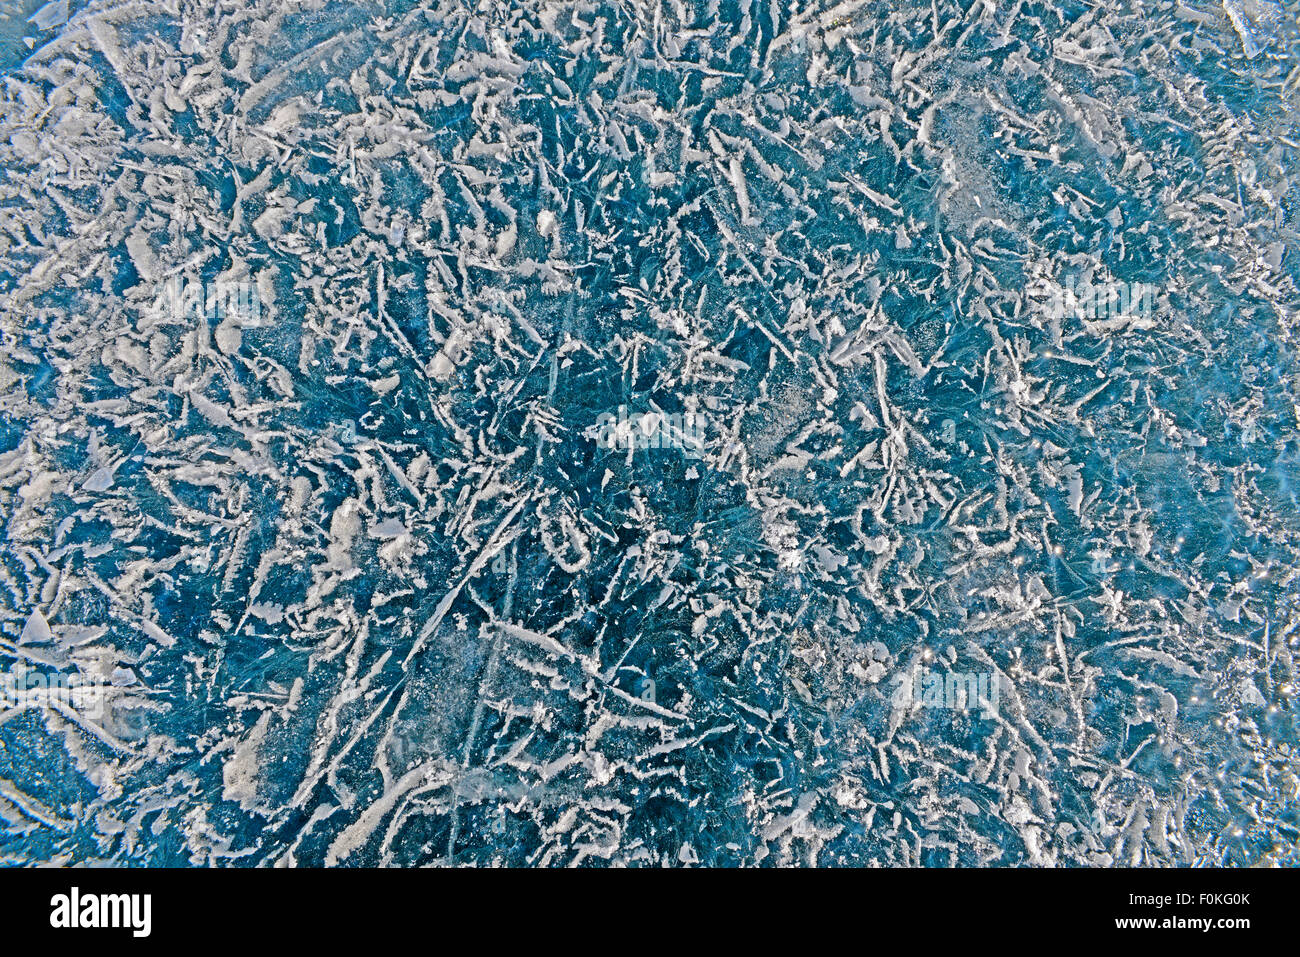 La Russia, il lago Baikal, cristalli di ghiaccio sulla superficie ghiacciata Foto Stock